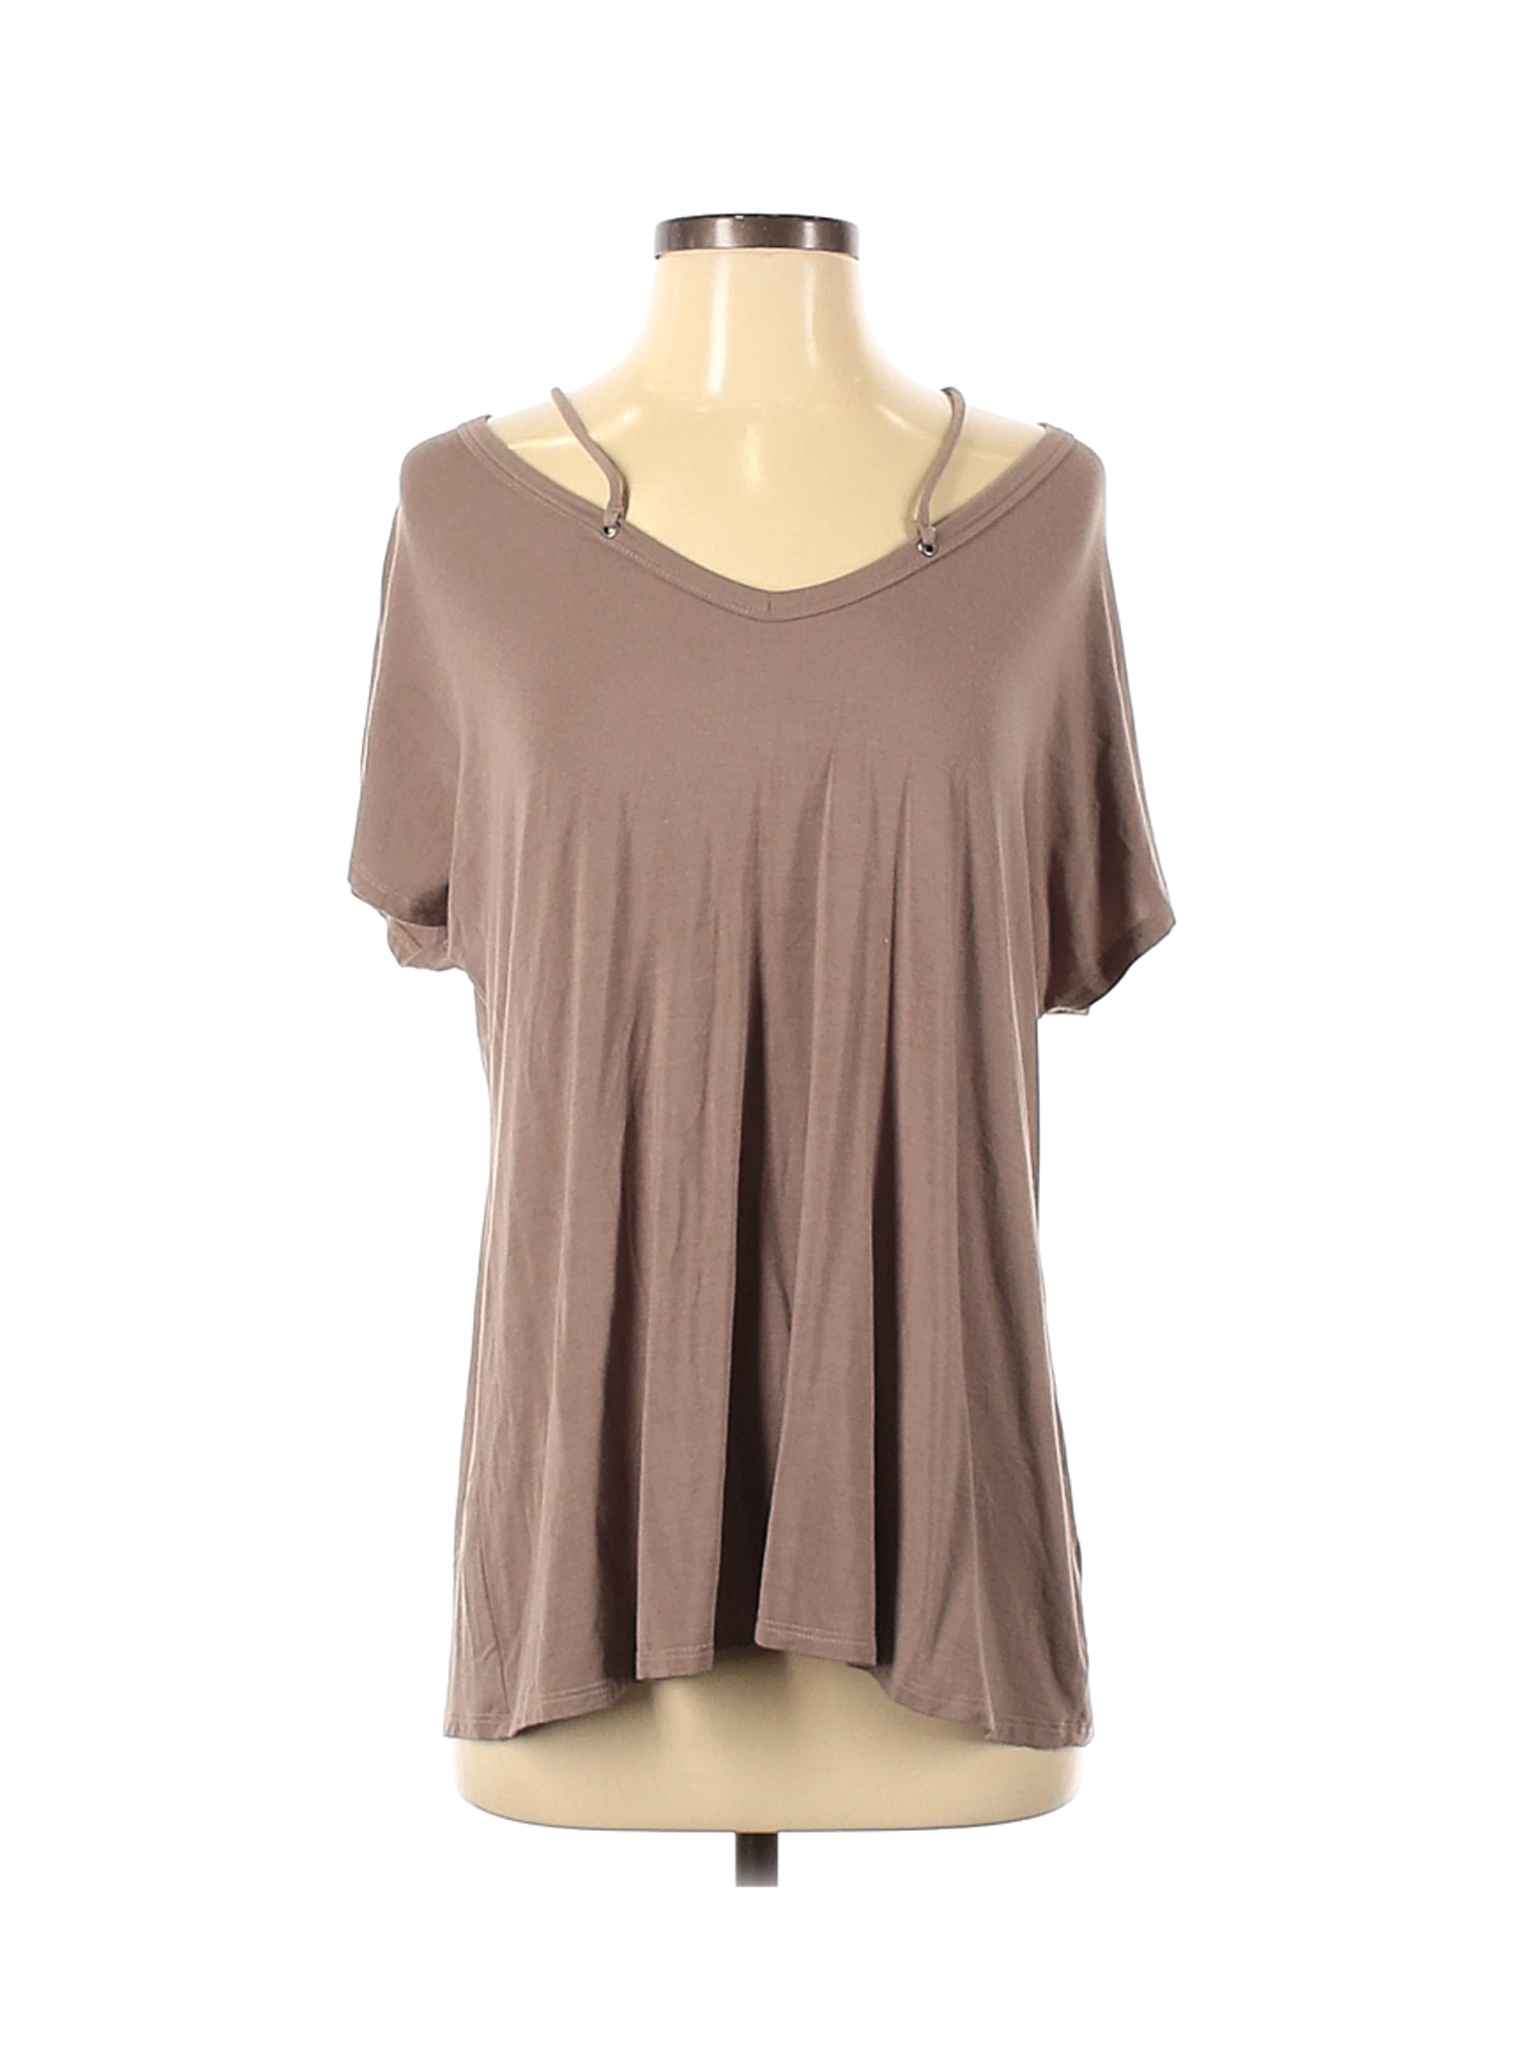 MTS Women Brown Short Sleeve T-Shirt S | eBay